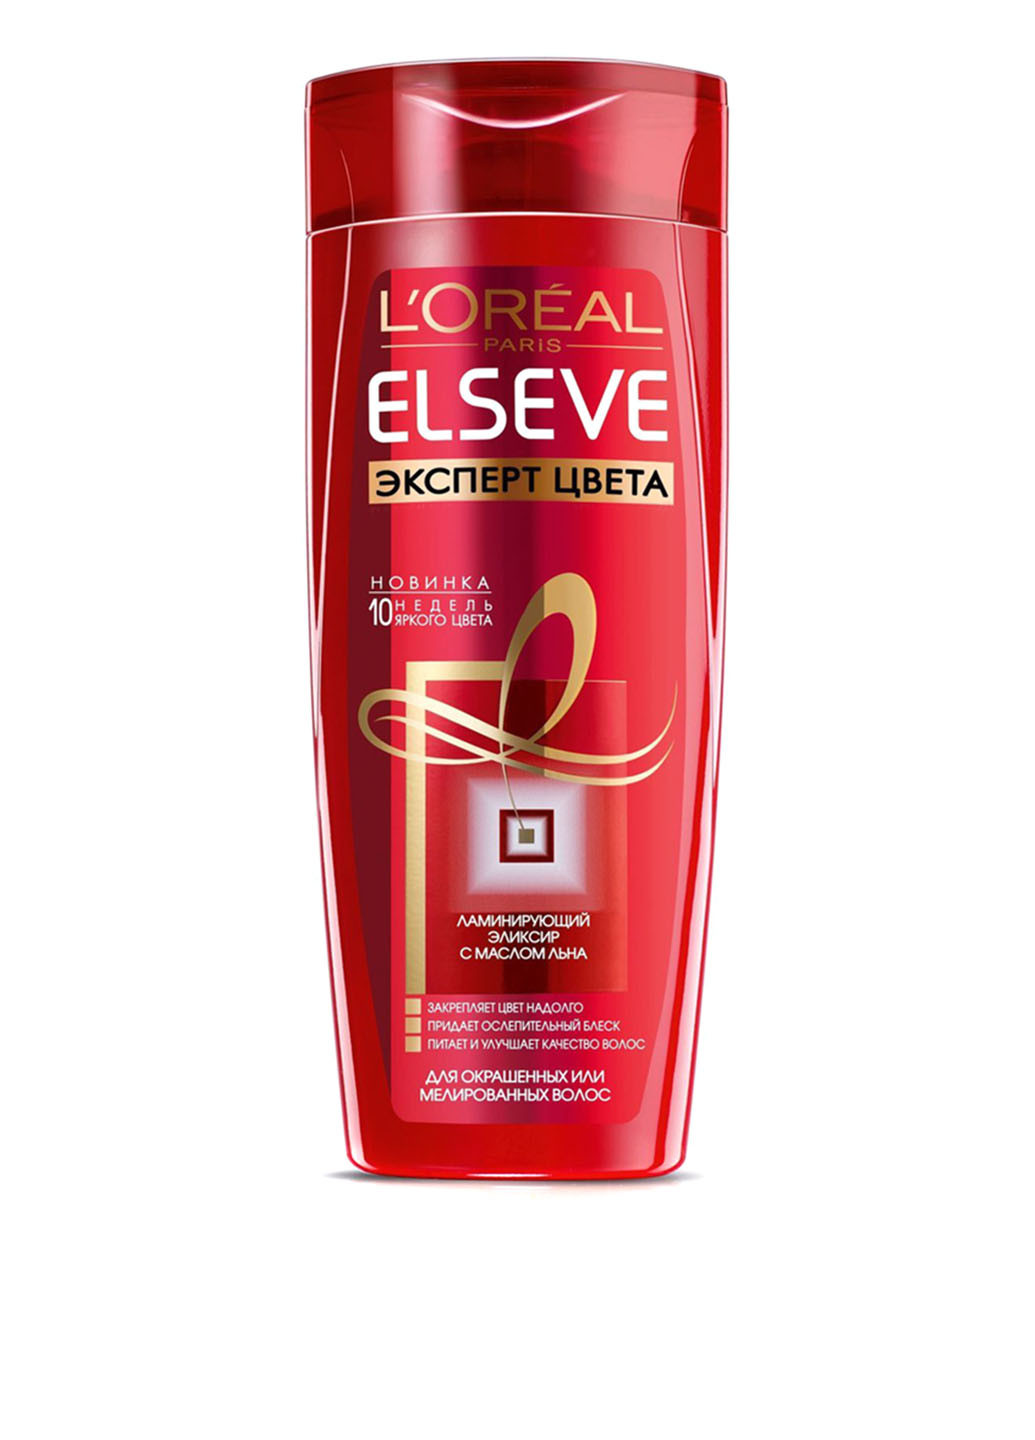 Шампунь для окрашенных волос "Эксперт цвета" L'Oreal Elseve Shampoo 400 мл L'Oreal Paris (88095840)